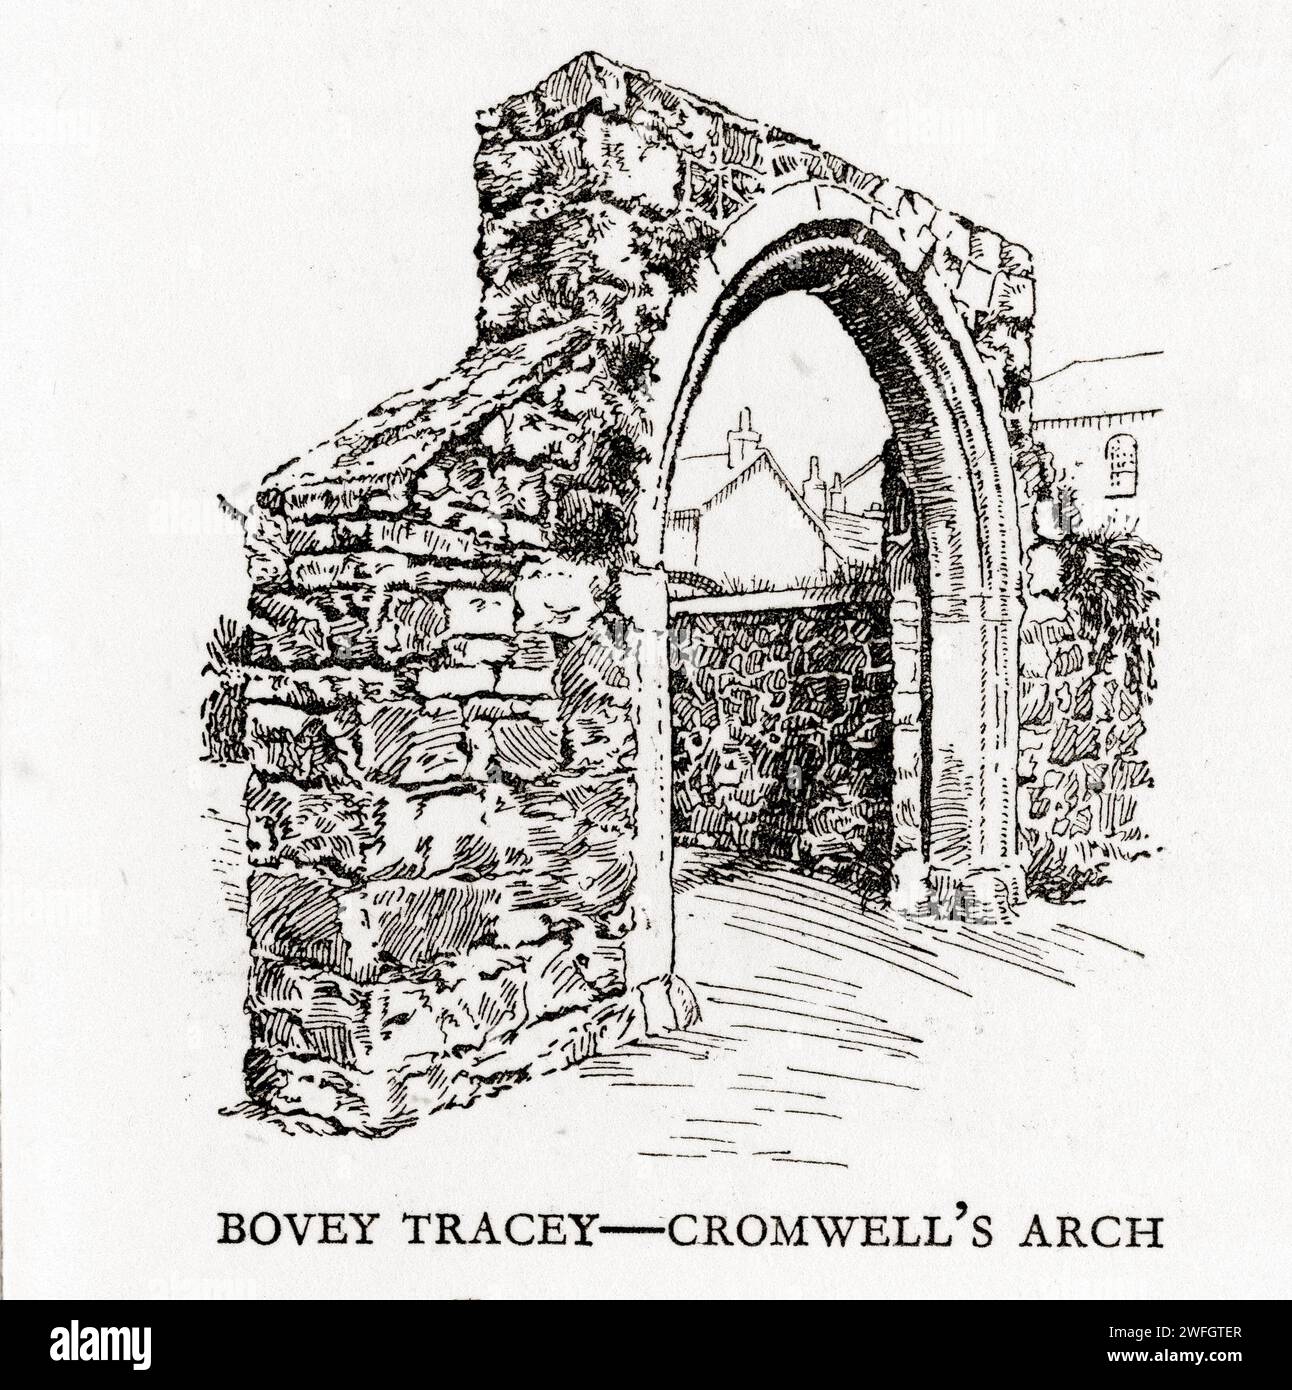 Stift- und Tintenskizze - Cromwell's Arch, Bovey Tracey, Devon. Illustration aus dem Buch Glorious Devon, von S.P.B. Mais, herausgegeben von der London Great Western Railway Company, 1928 Stockfoto